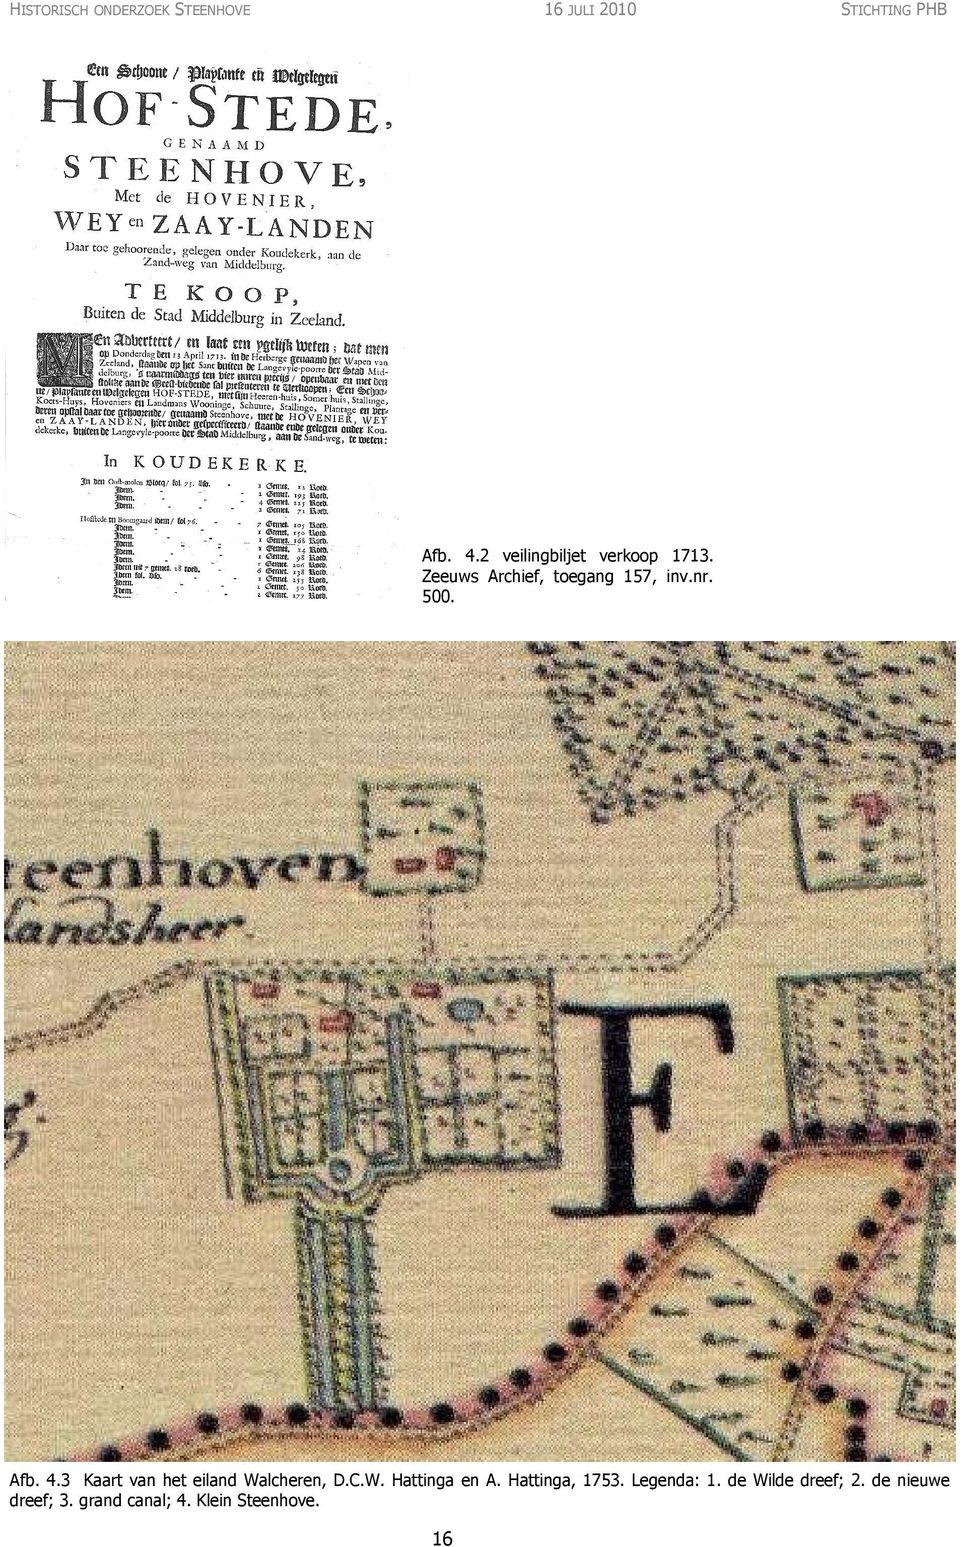 4.3 Kaart van het eiland Walcheren, D.C.W. Hattinga en A. Hattinga, 1753.